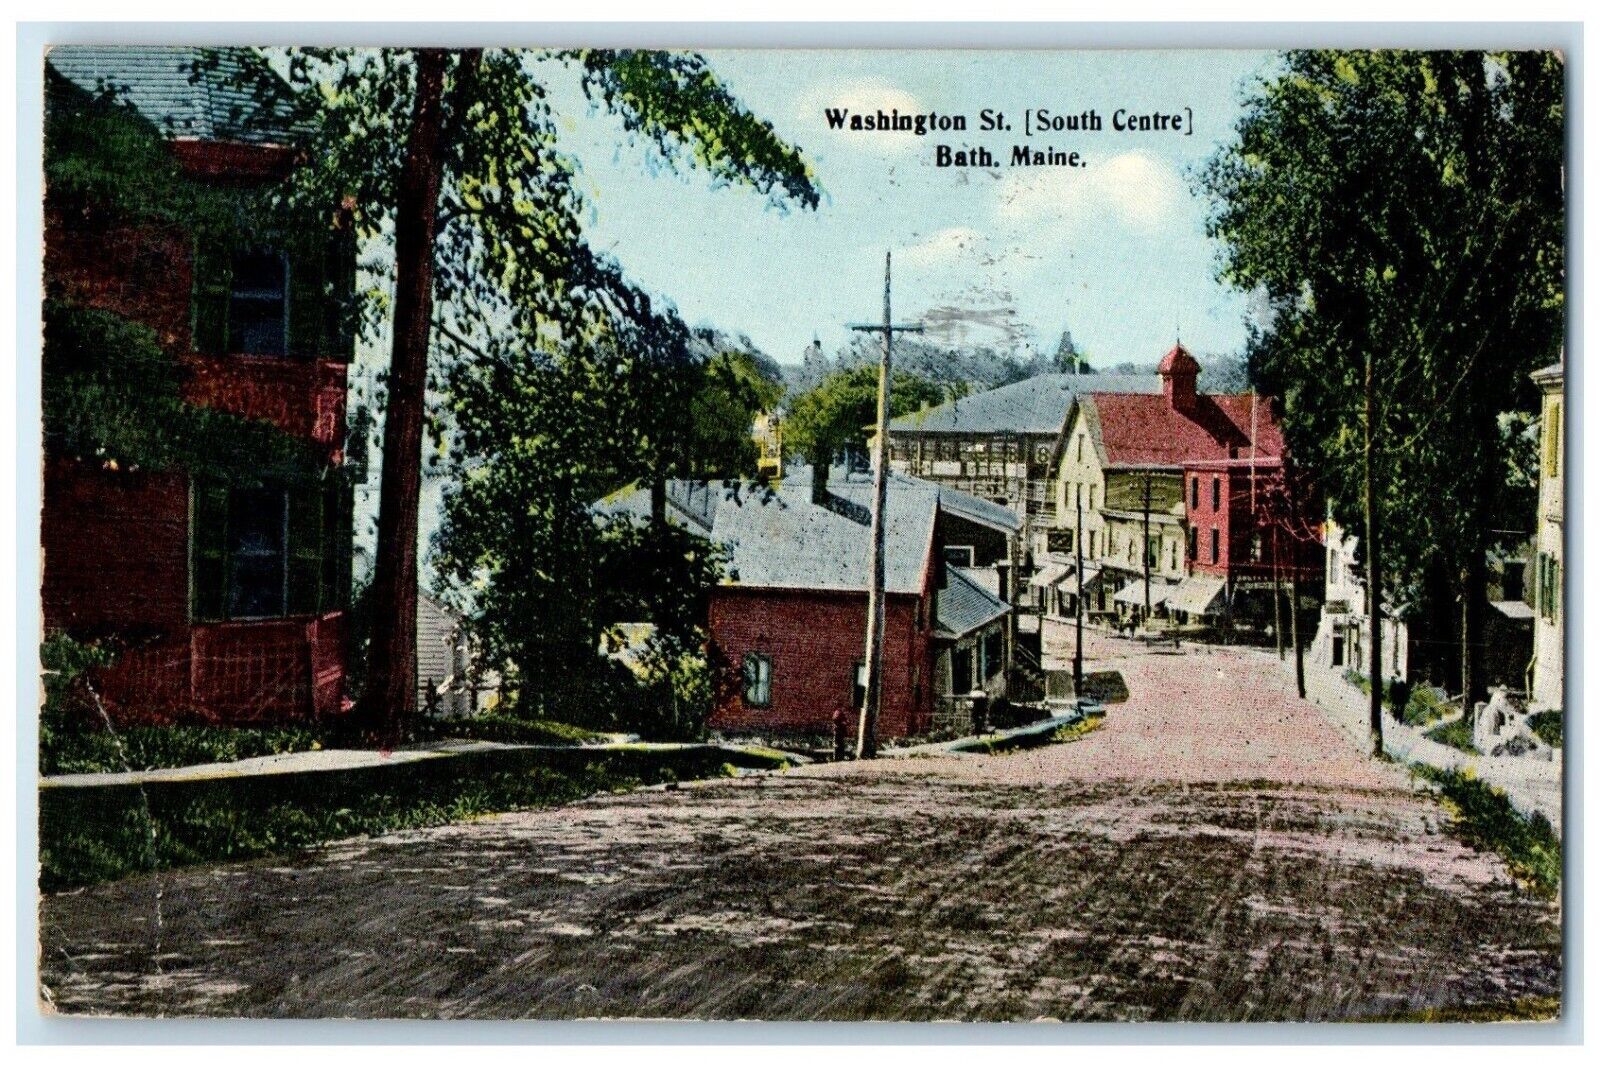 1913 Washington St. South Centre Dirt Road Bath Maine ME Posted Antique Postcard